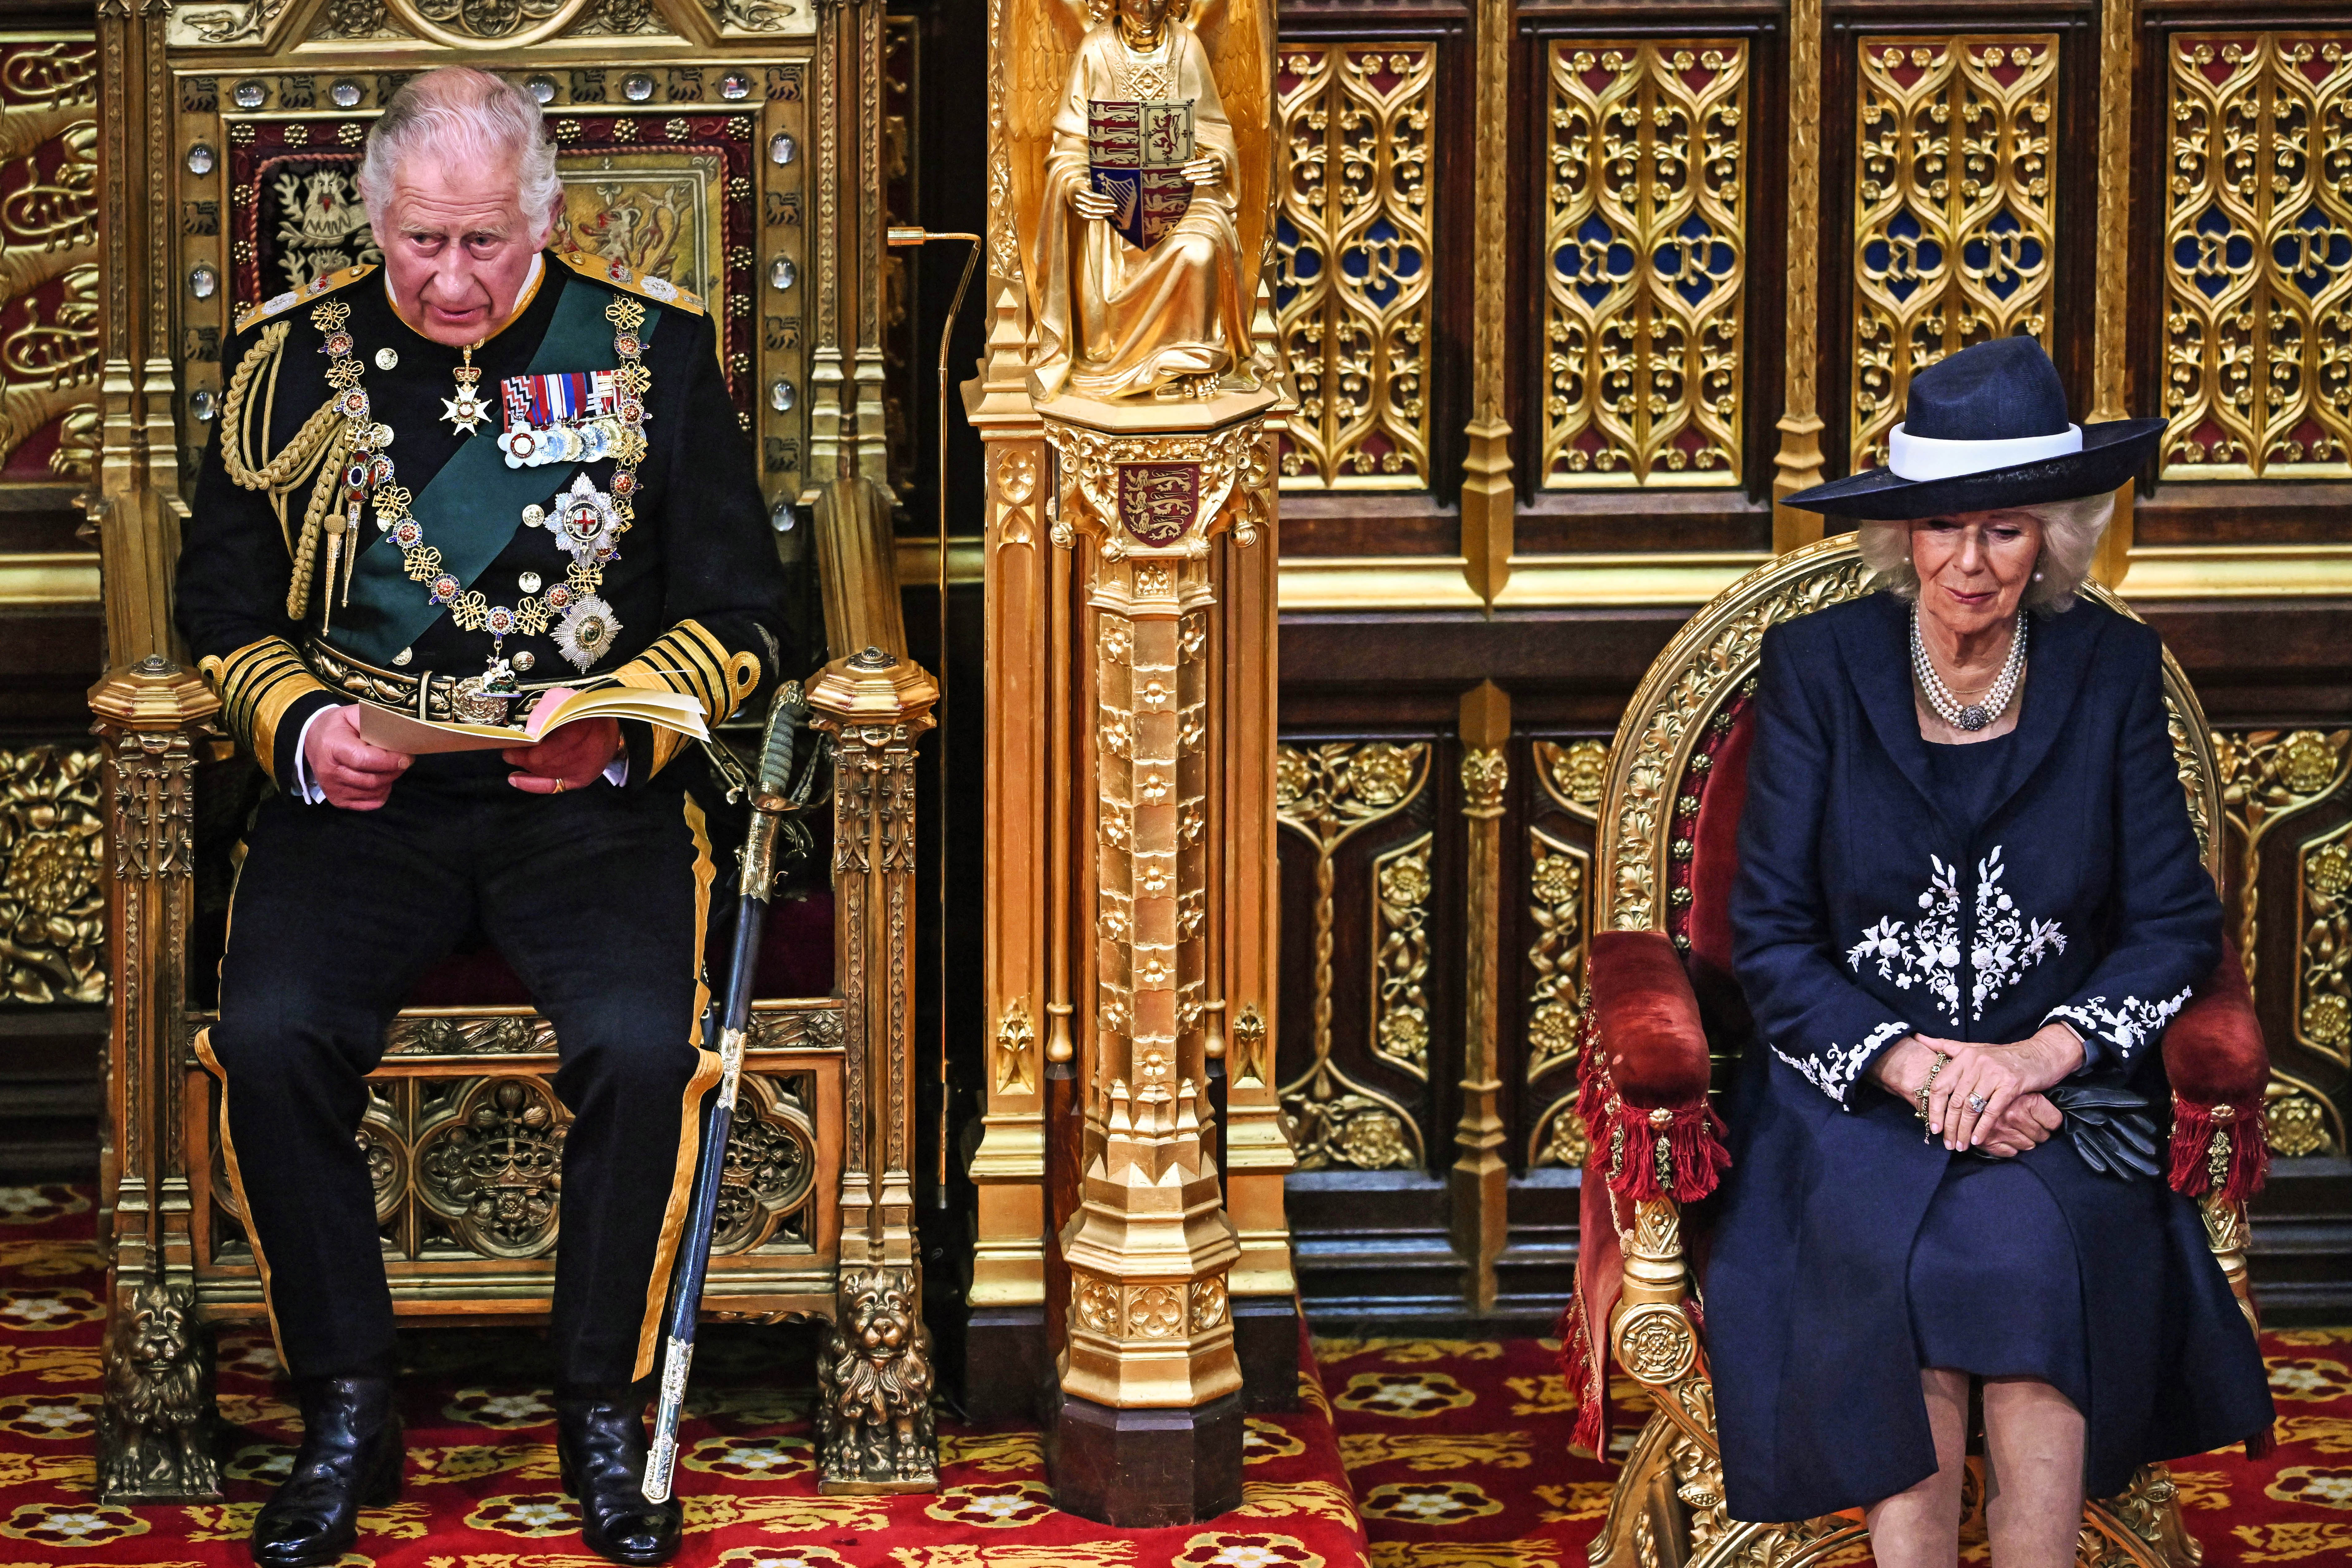 El príncipe Charles junto a su esposa Camilla, duquesa de Cornualles, en la Cámara de los Lores, durante la apertura estatal del parlamento, en el palacio de Westminster, el 10 de mayo de 2022 en Londres, Inglaterra. | Foto: Getty Images